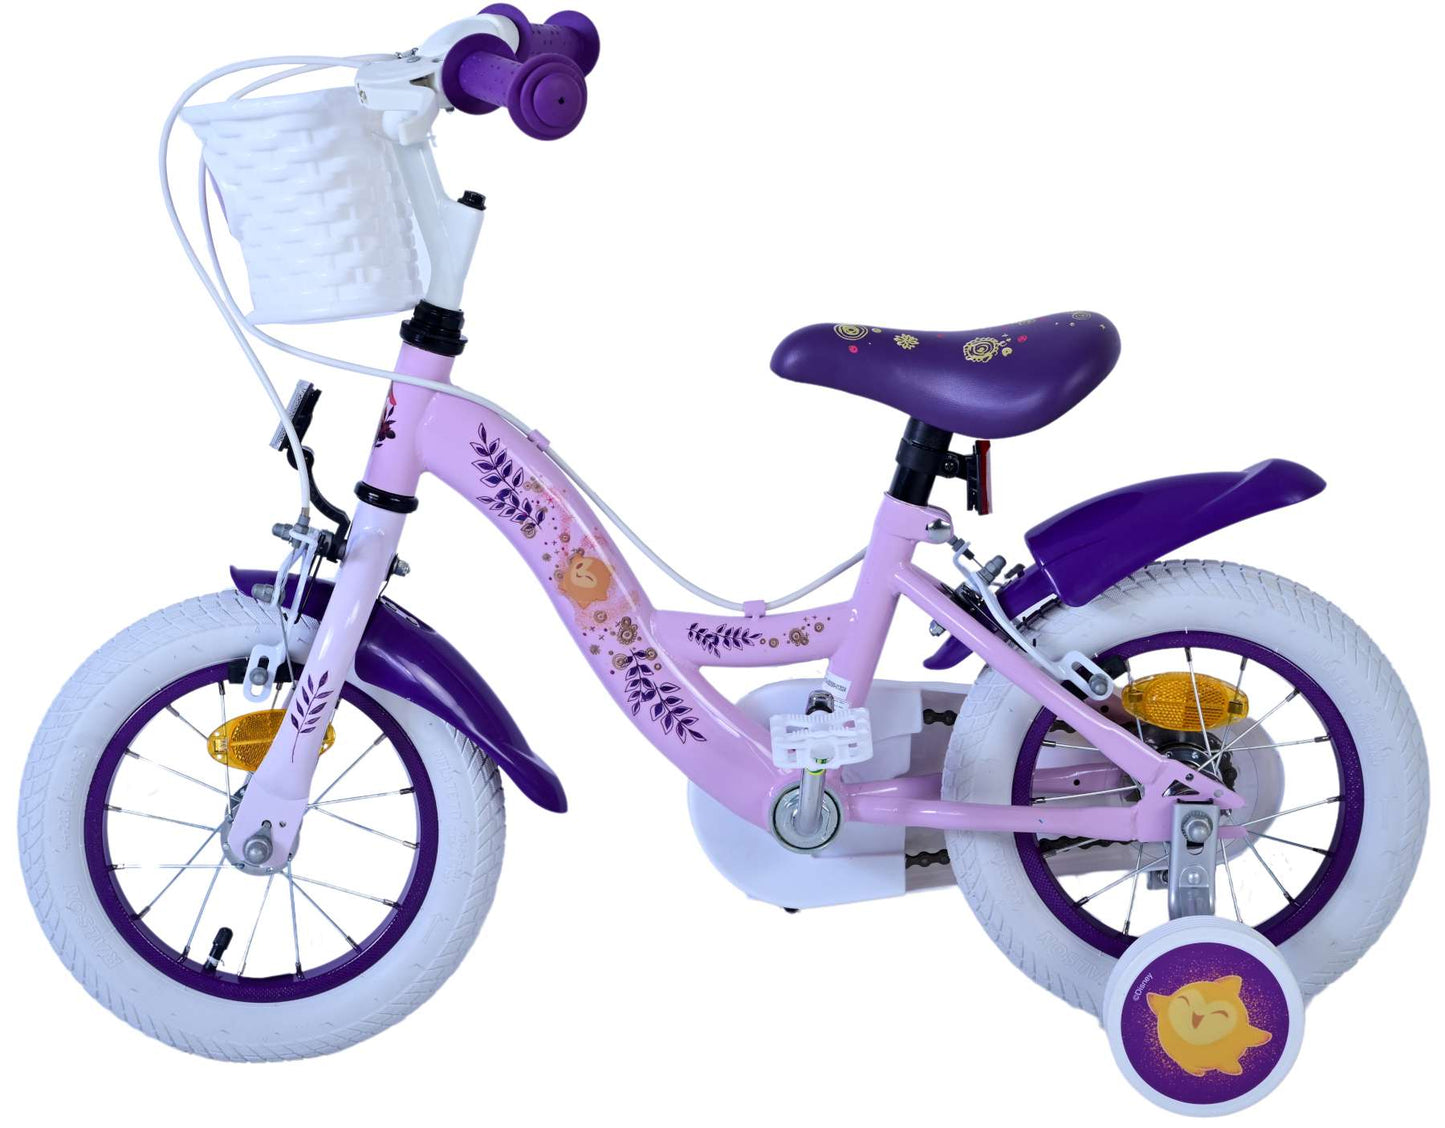 Virere Wish Children's Bike Girls da 12 pollici viola freni a due mani